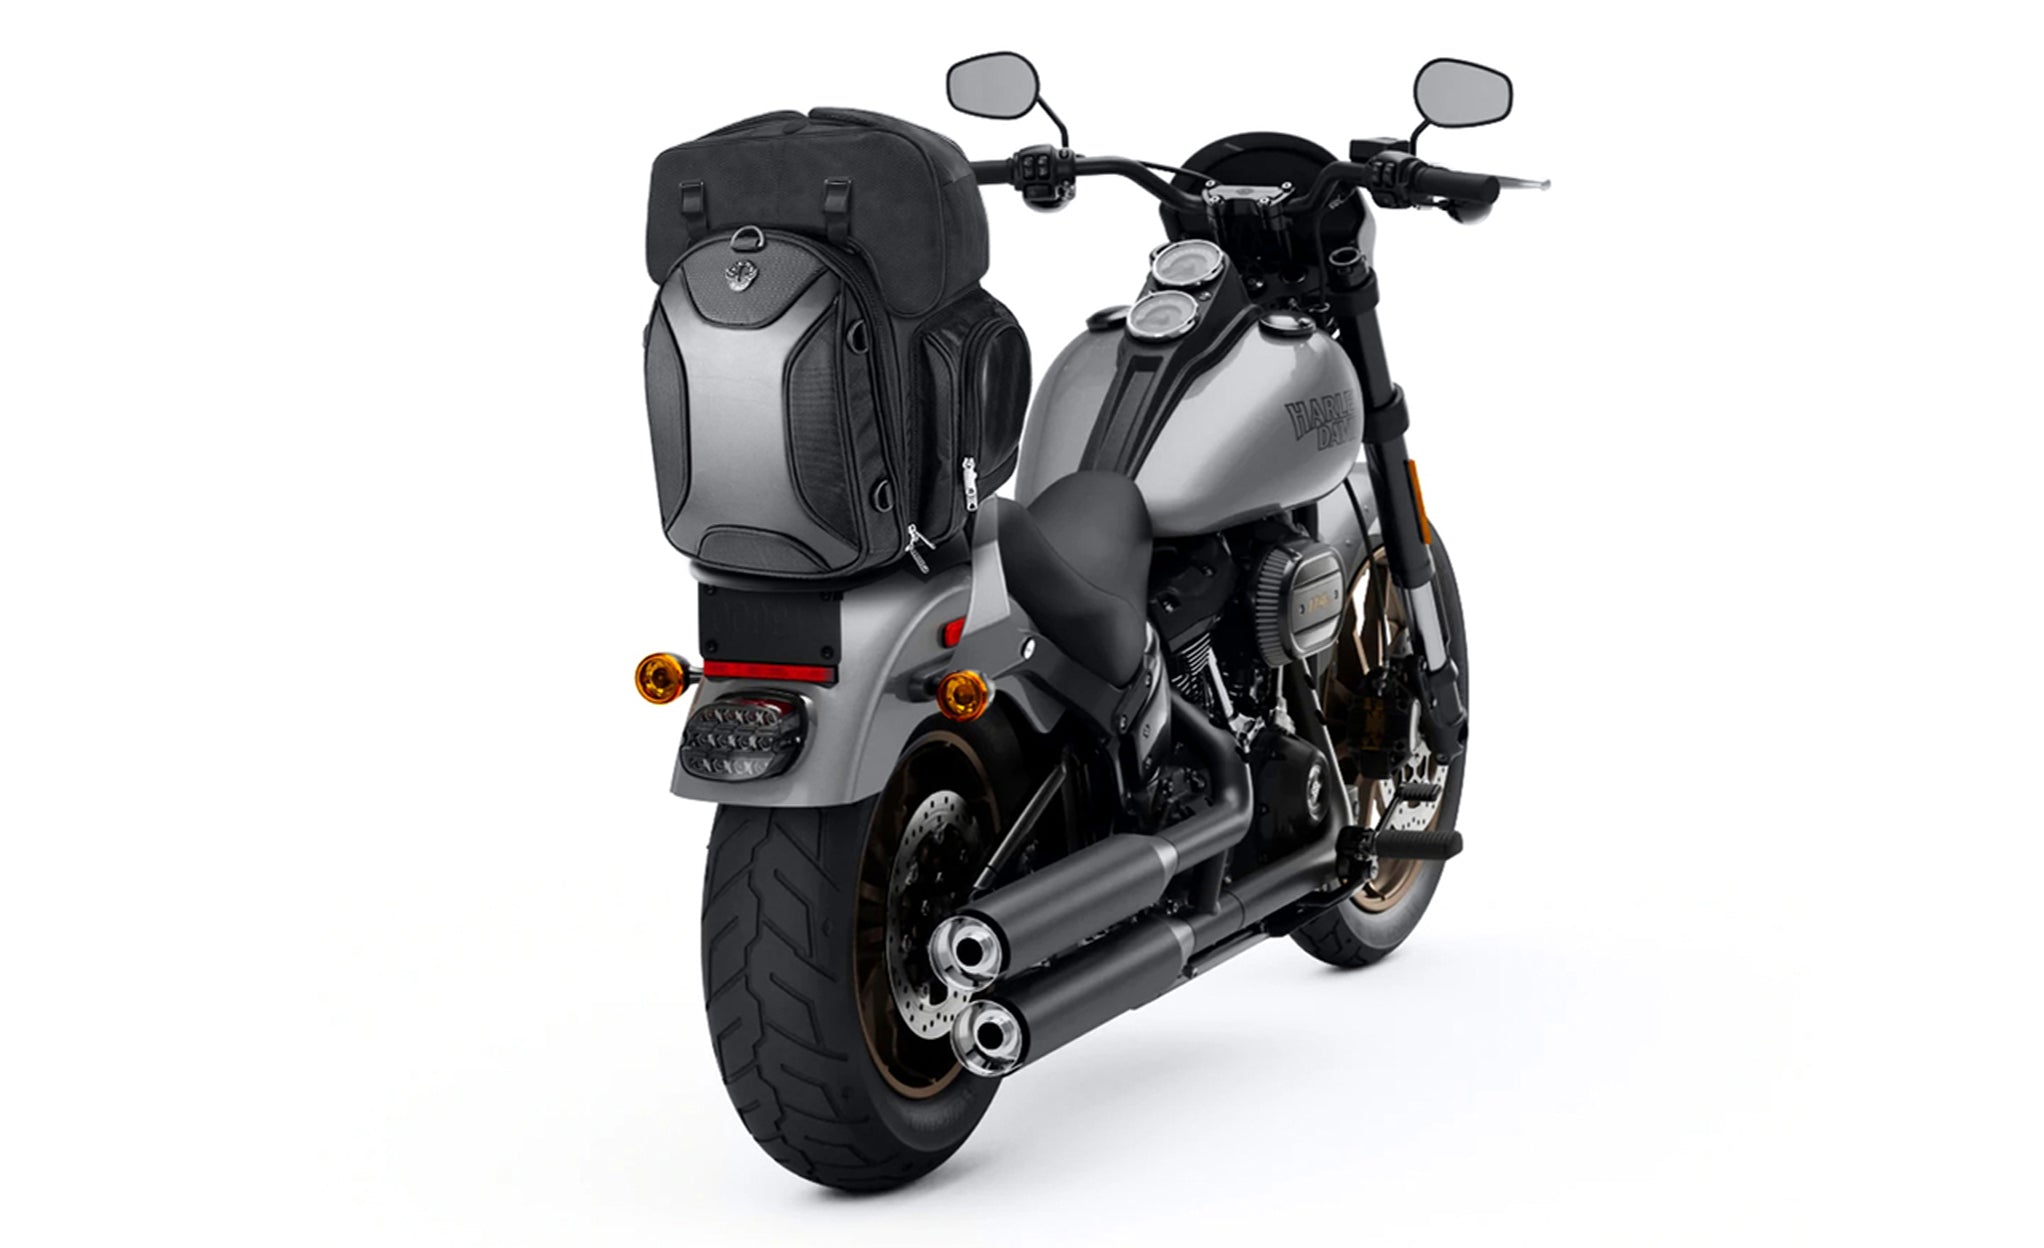 Viking Dagr Extra Large Kawasaki Motorcycle Tail Bag Bag on Bike View @expand